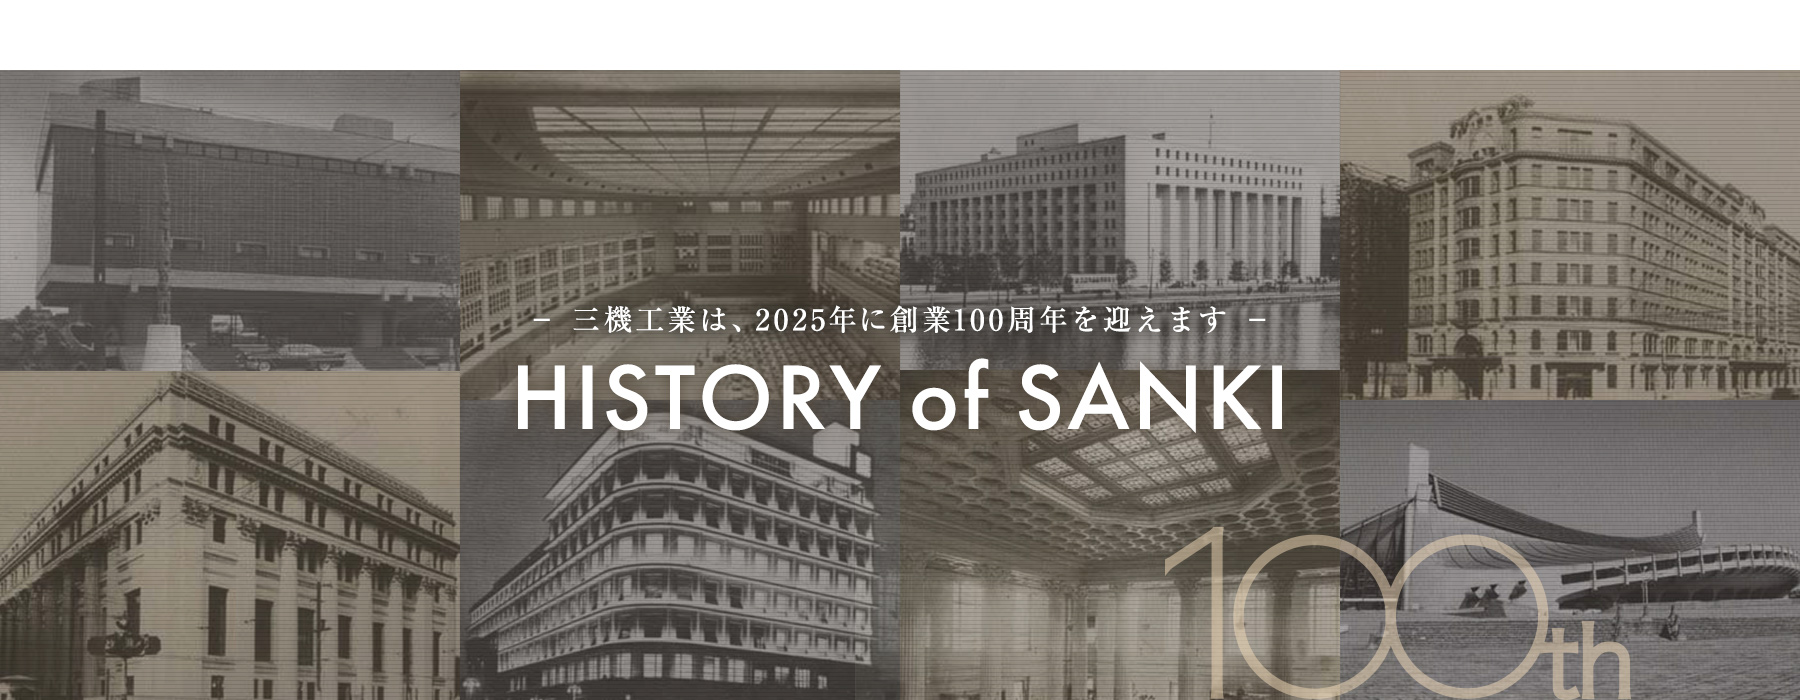 HISTORY of SANKI 三機工業は、2025年に創業100周年を迎えます